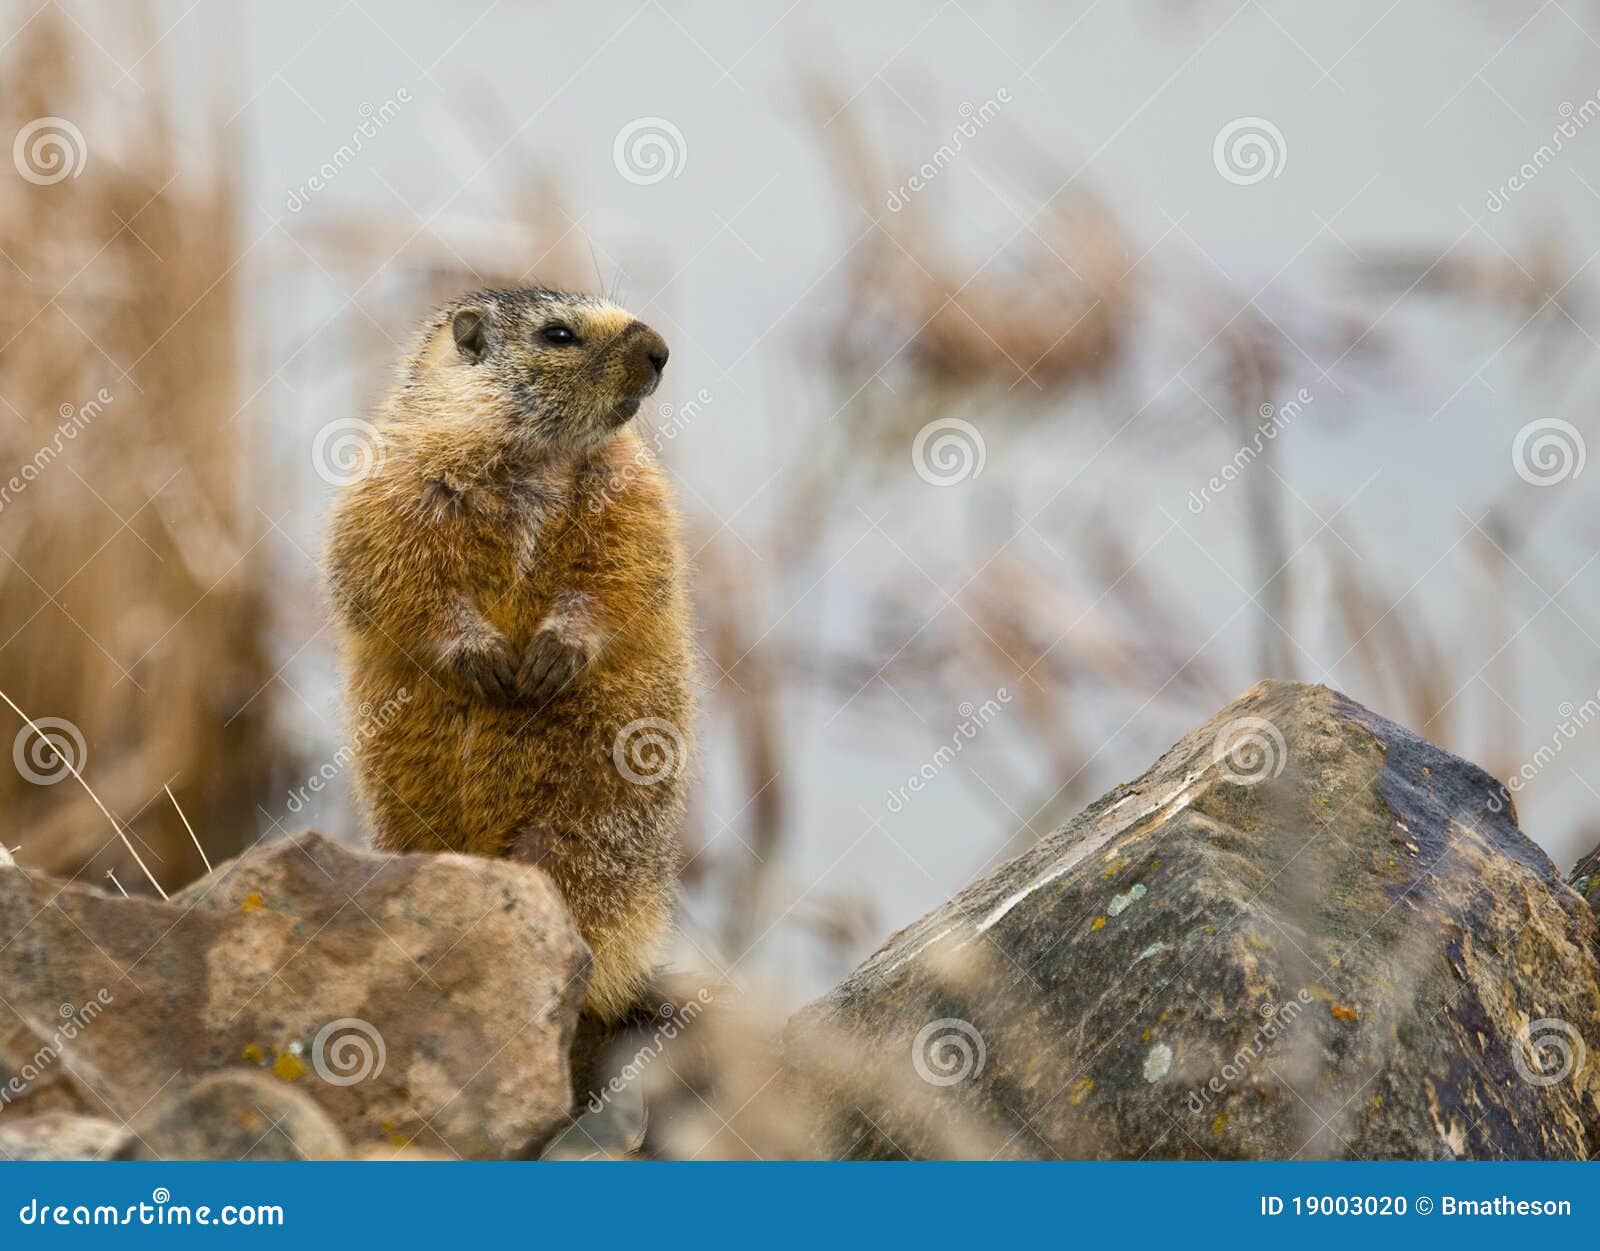 Marmota canosa #1. La marmota canosa (caligata del Marmota) es una ardilla grande, fornida esa vive en afloramientos rocosos cerca de prados herbosos